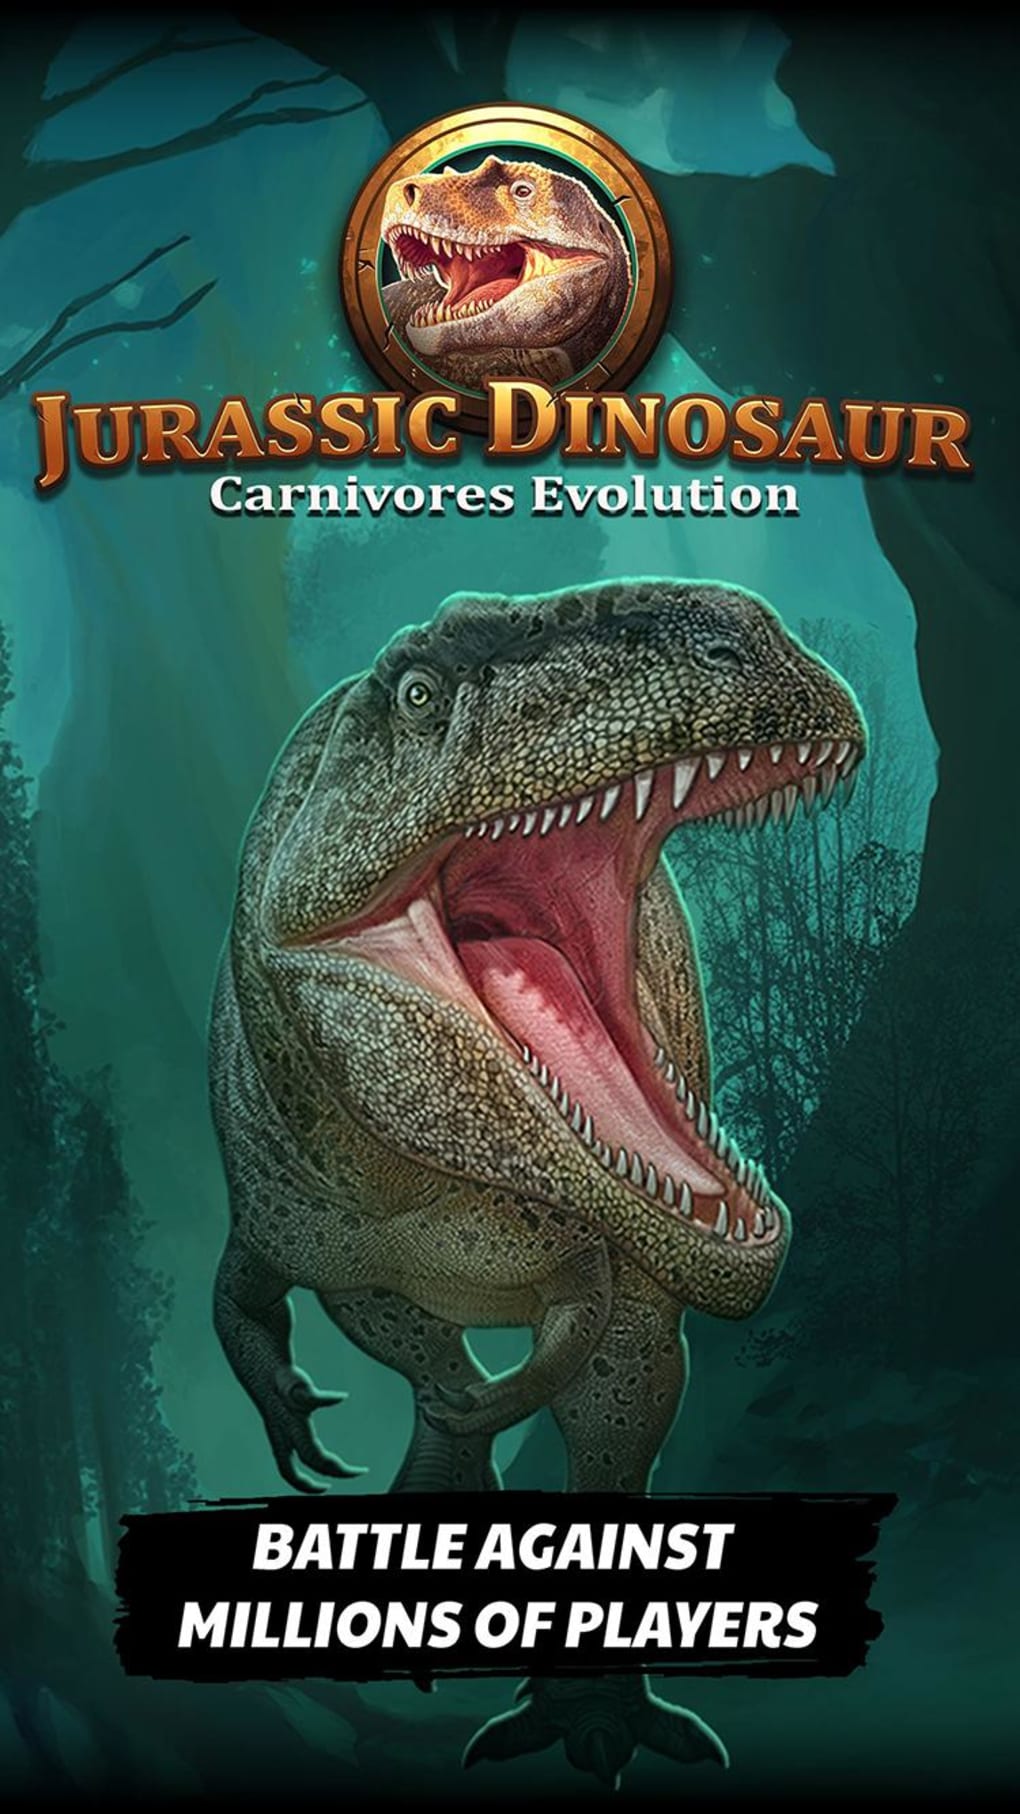 Download do APK de Dinossauro: jogos sem internet para Android